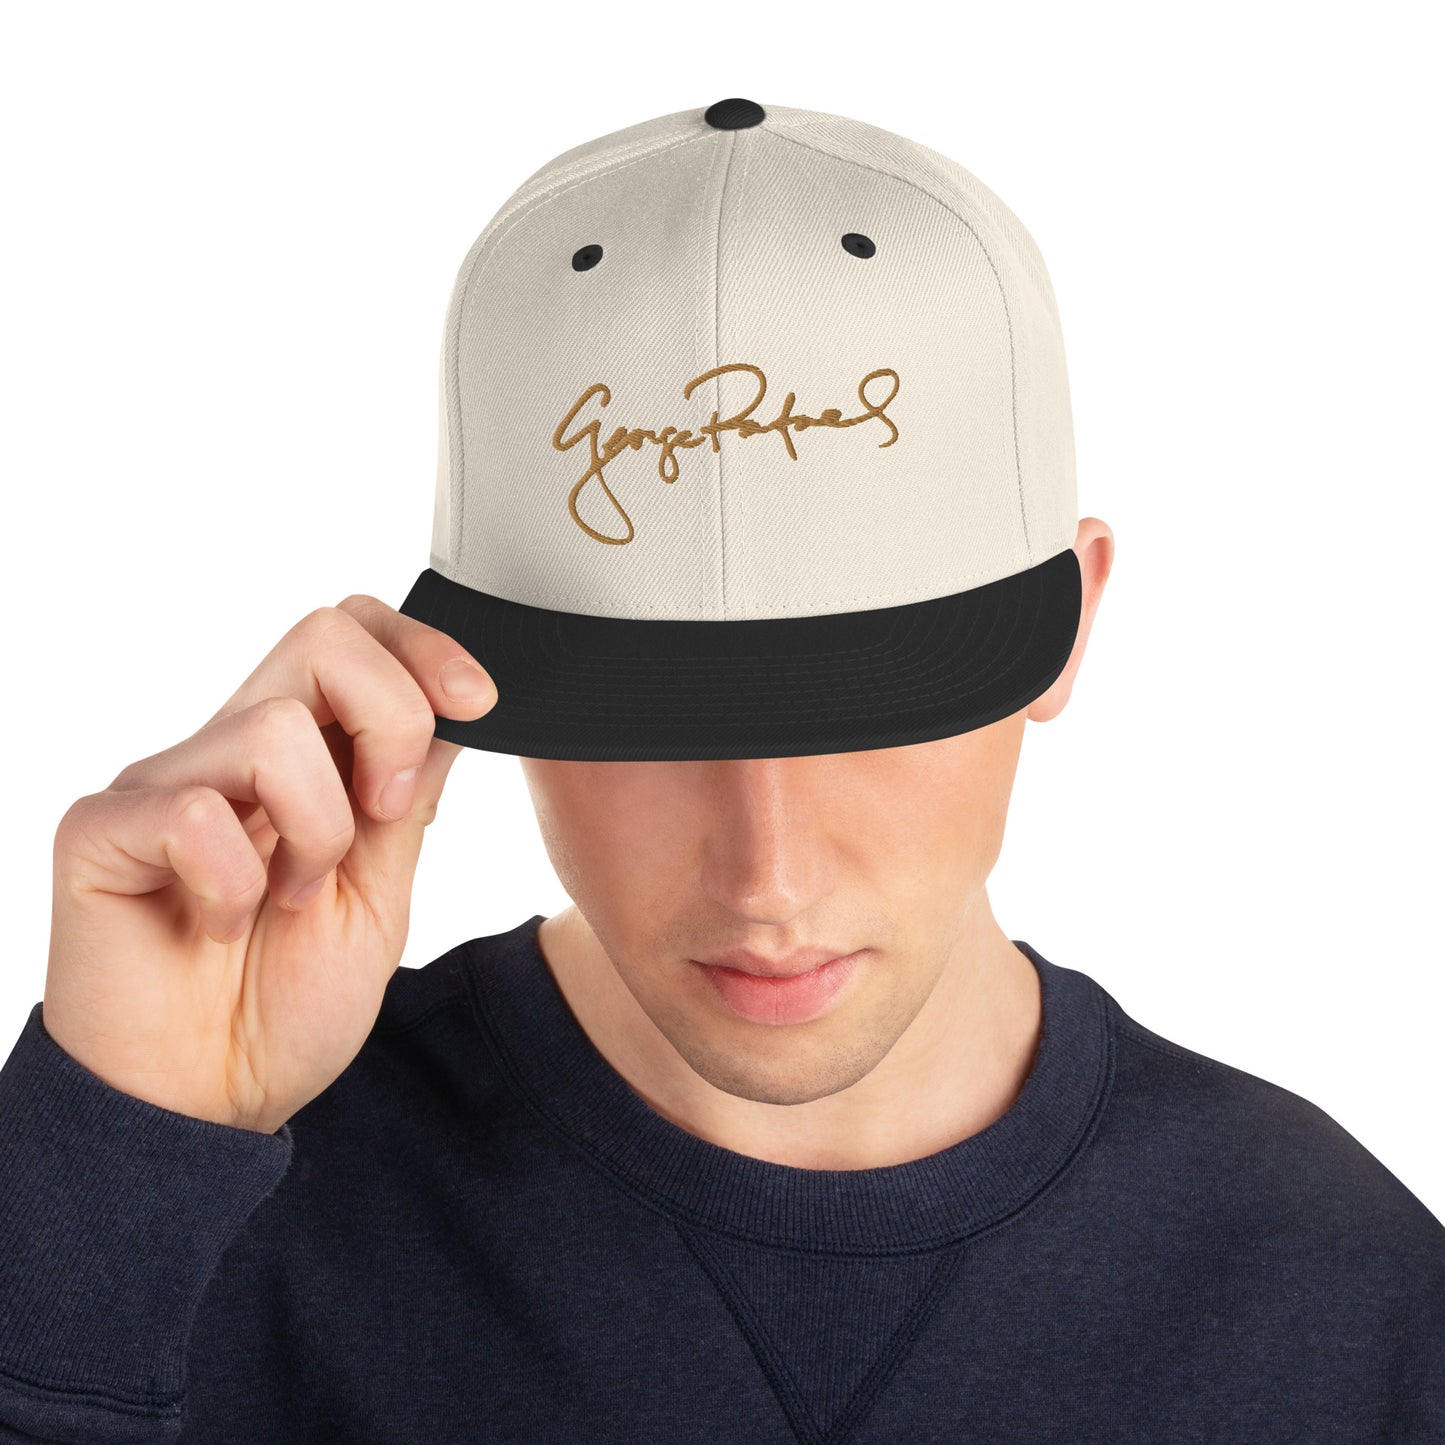 George Rafael Signature Snapback Hat